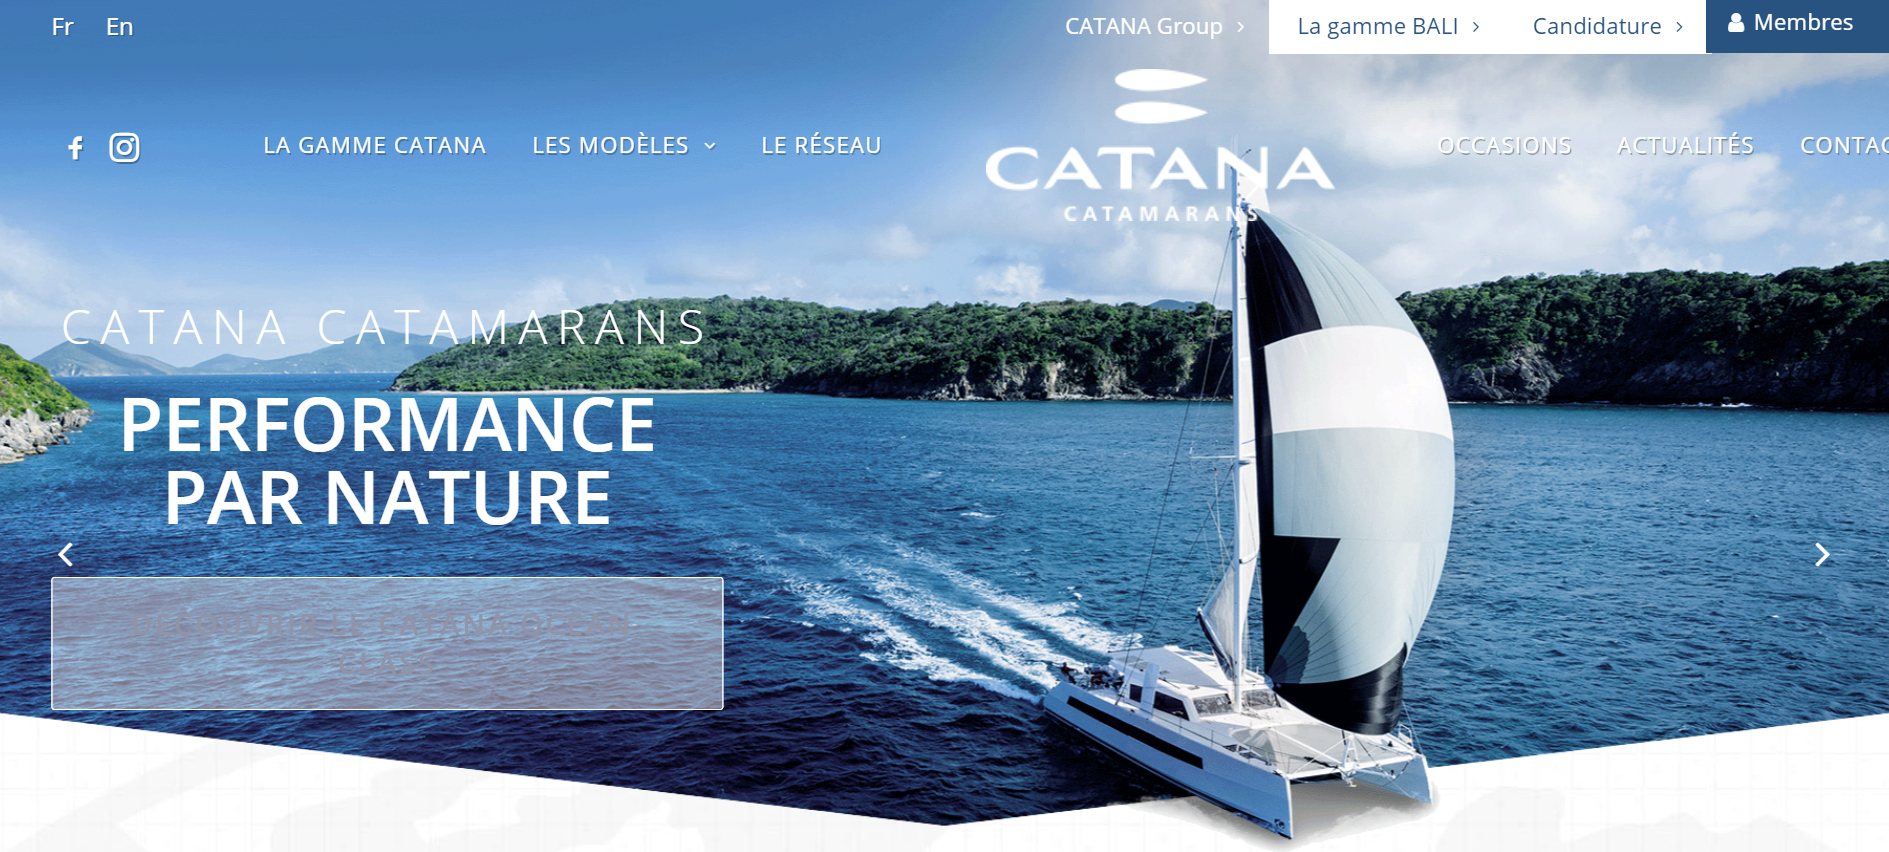 法国游艇集团 Catana 最新年报：全球营业额增长6.7%，新造船只销售增幅最高